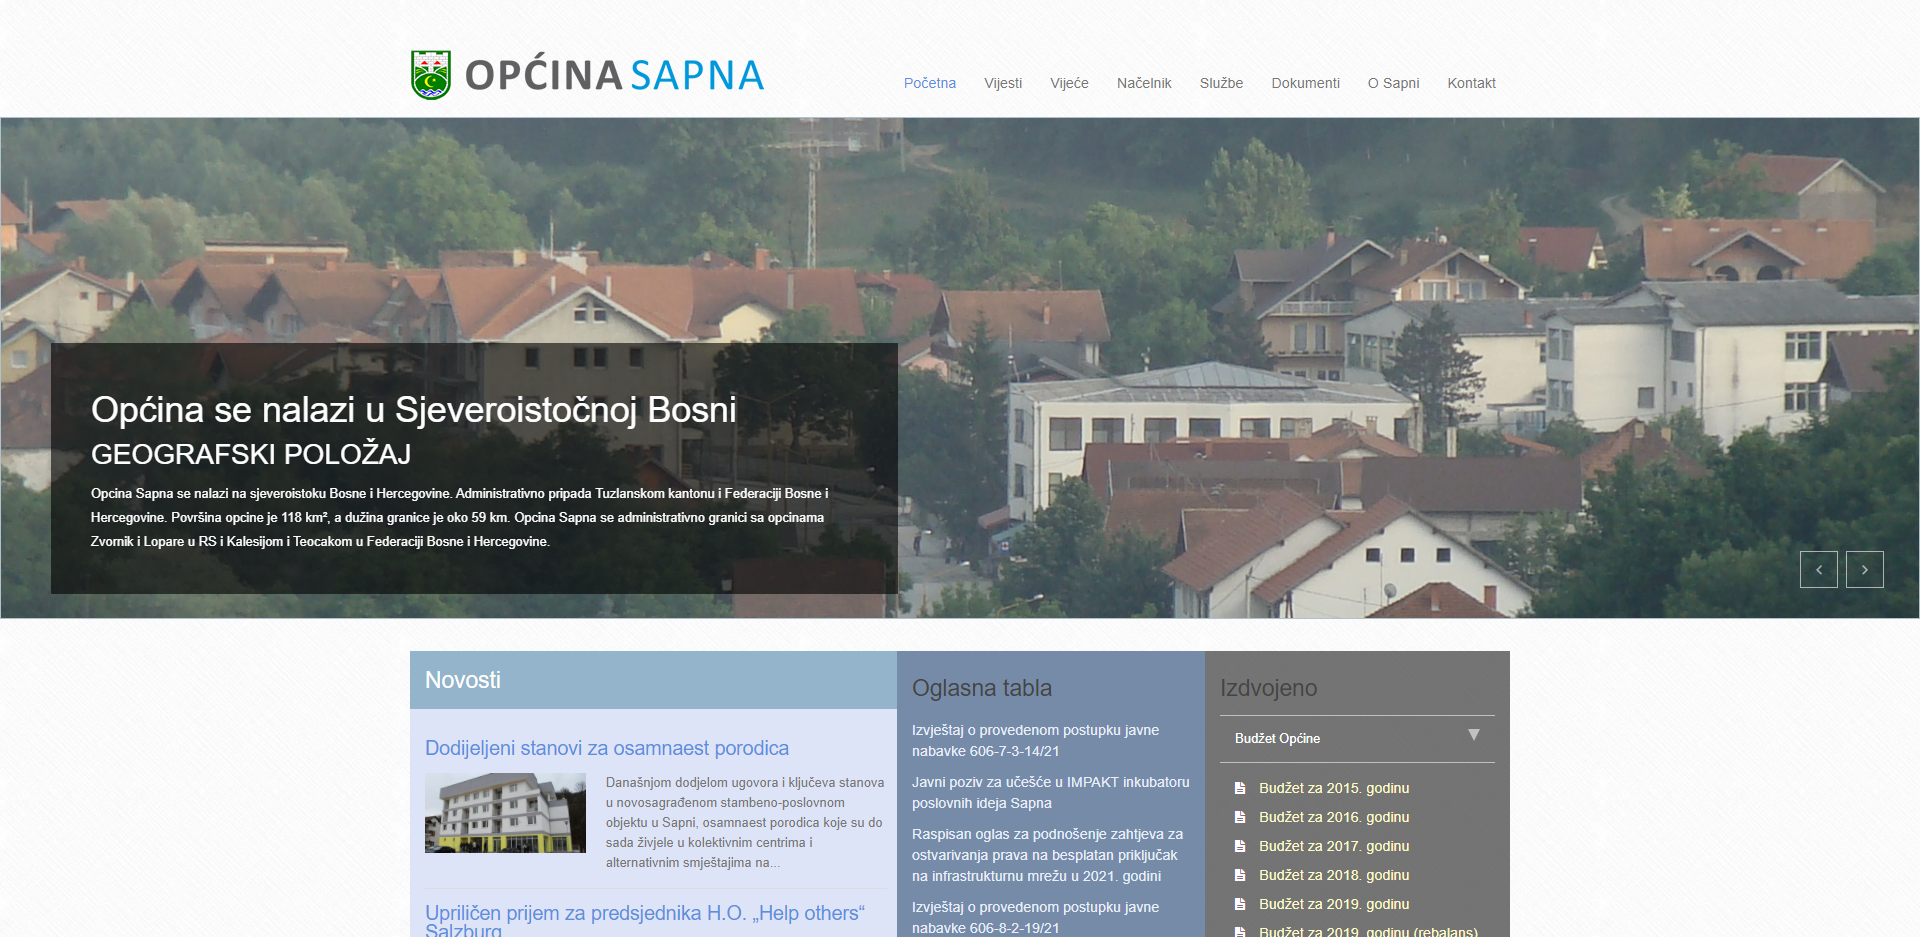 Općina Sapna